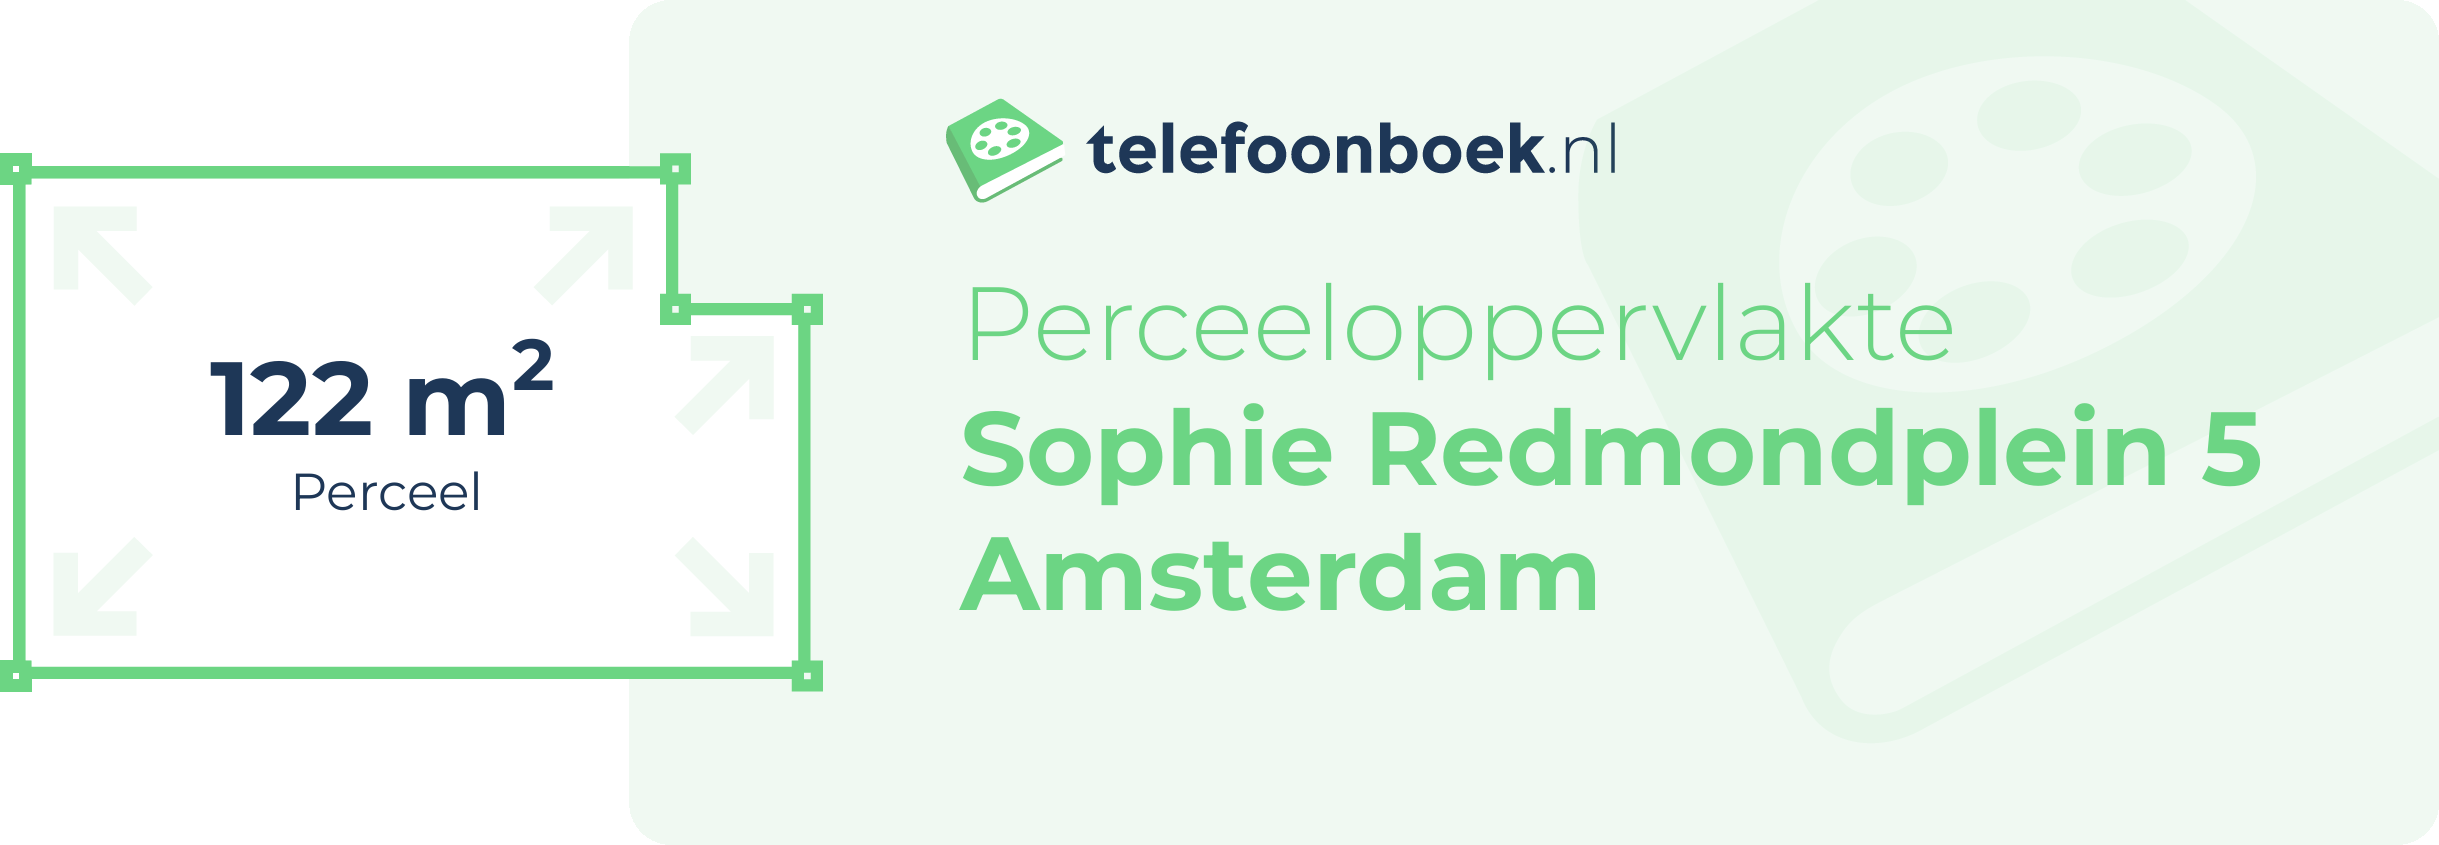 Perceeloppervlakte Sophie Redmondplein 5 Amsterdam